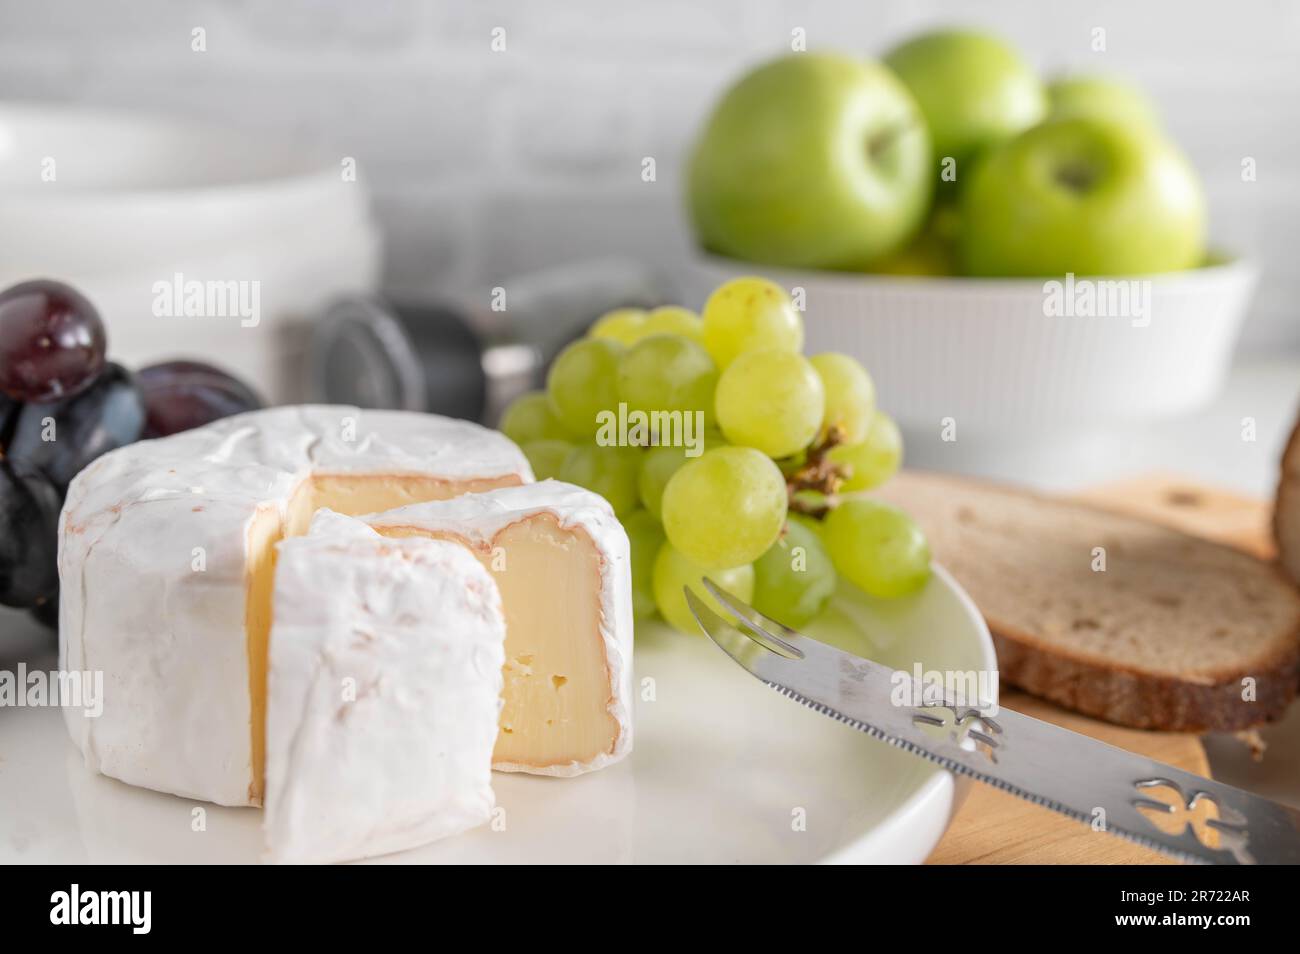 Fromage doux ou brie et raisins sur une assiette blanche avec du pain Banque D'Images